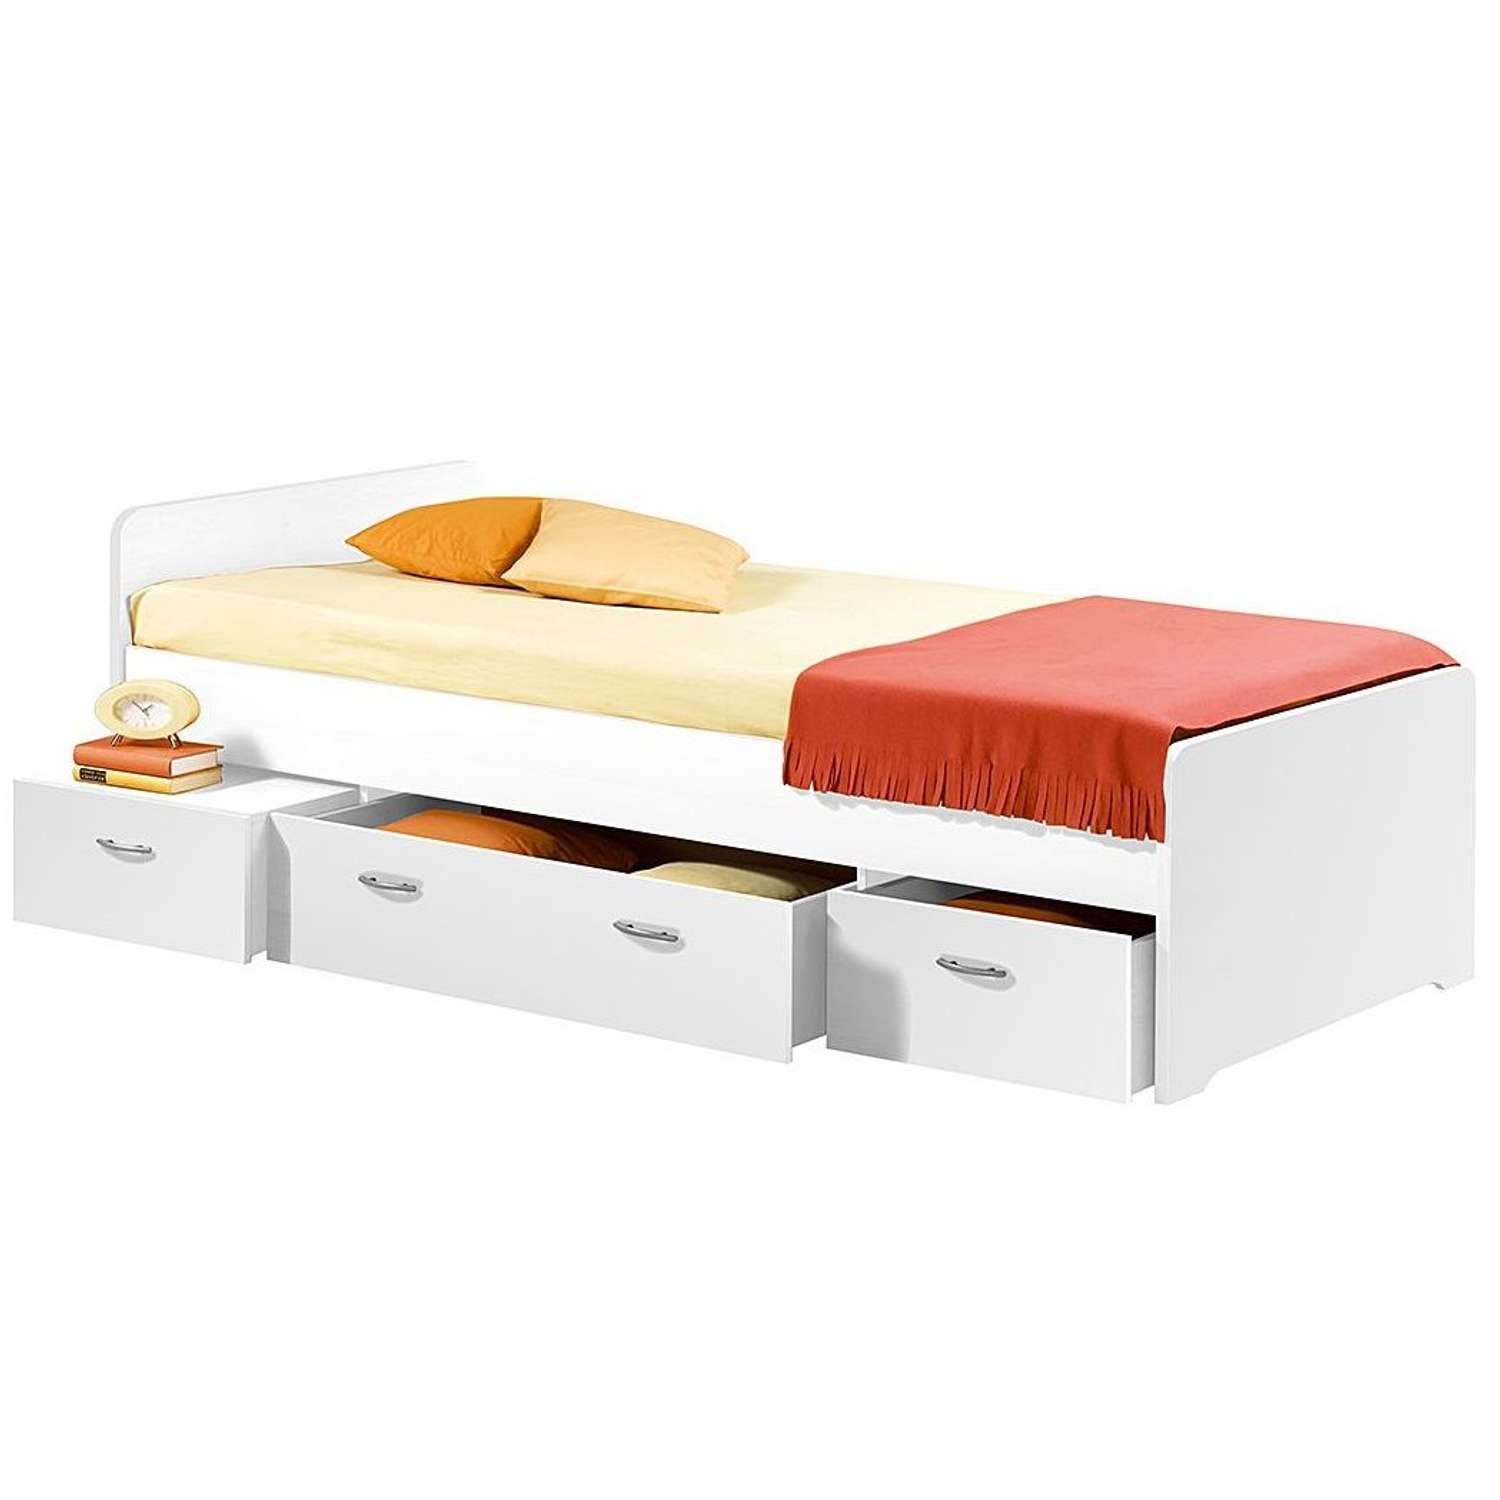 Кровать Dipriz односпальная Боро с ящиками для хранения - фото 1